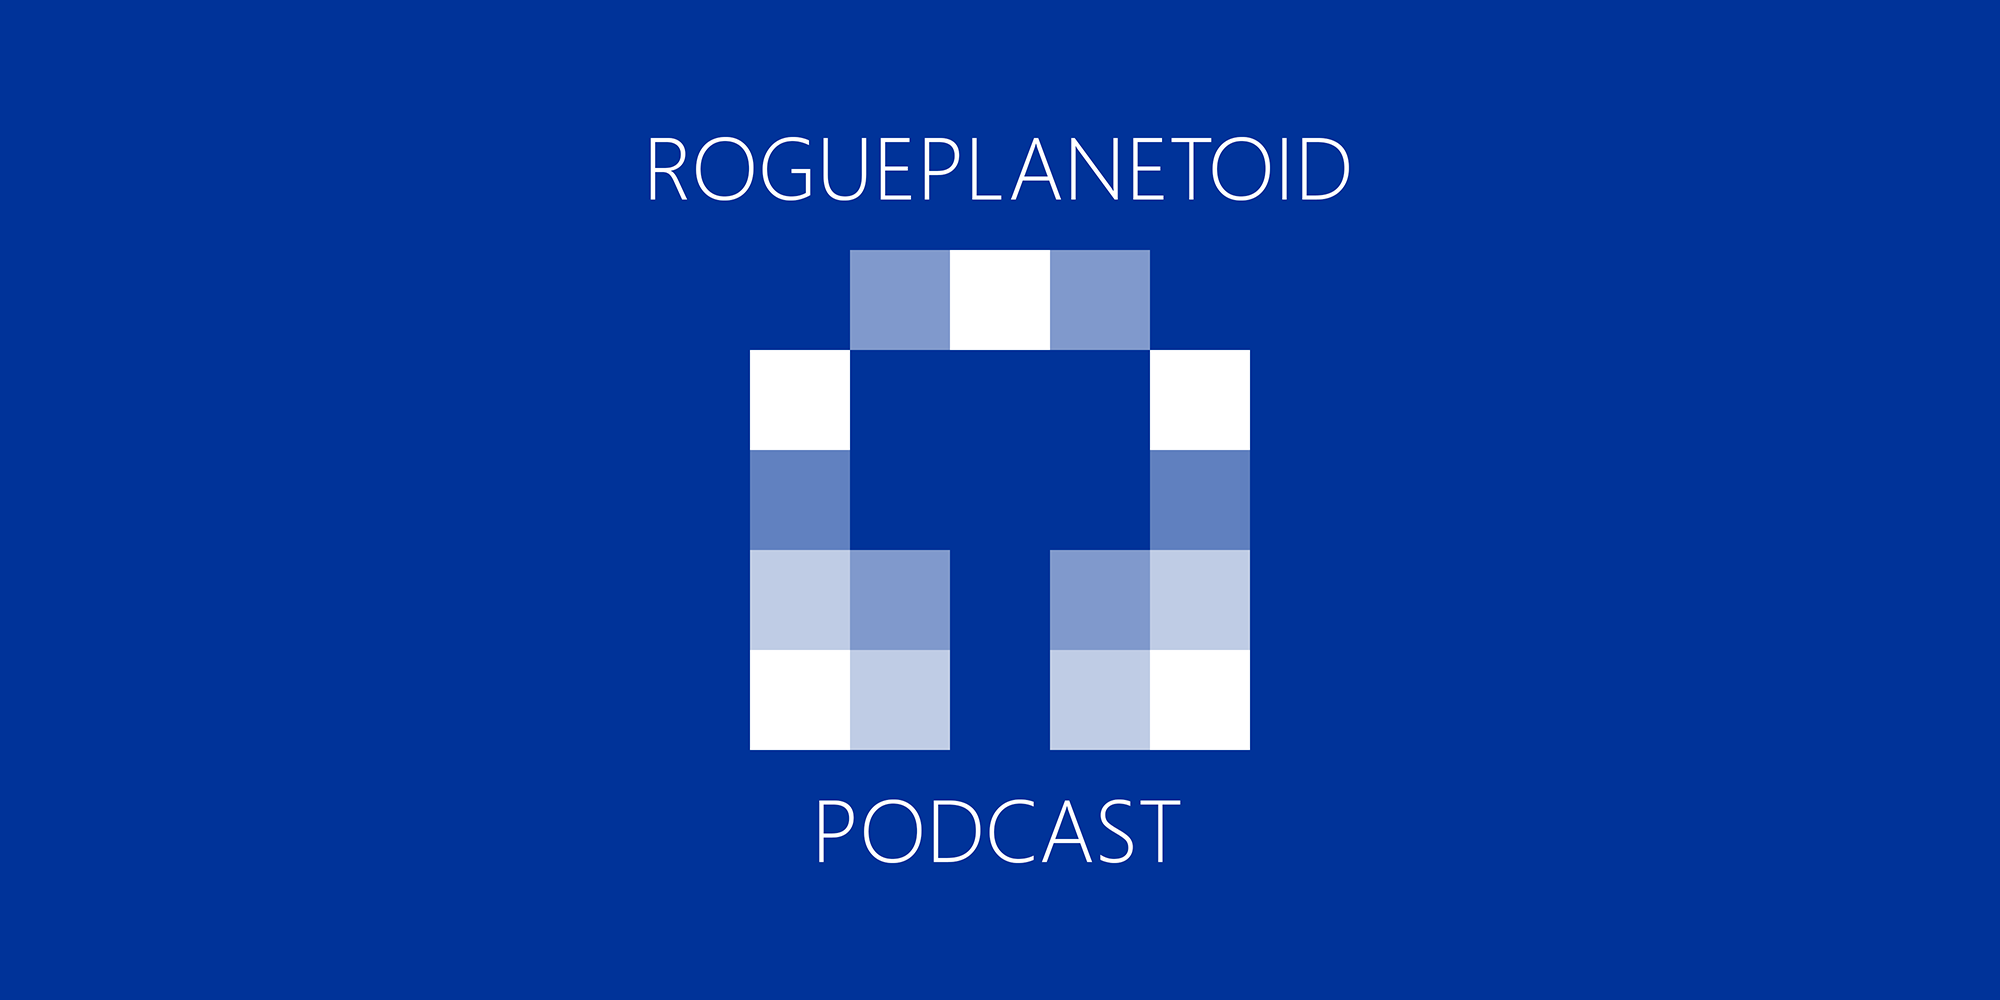 RoguePlanetoid Podcast - Episode Six - Blazor